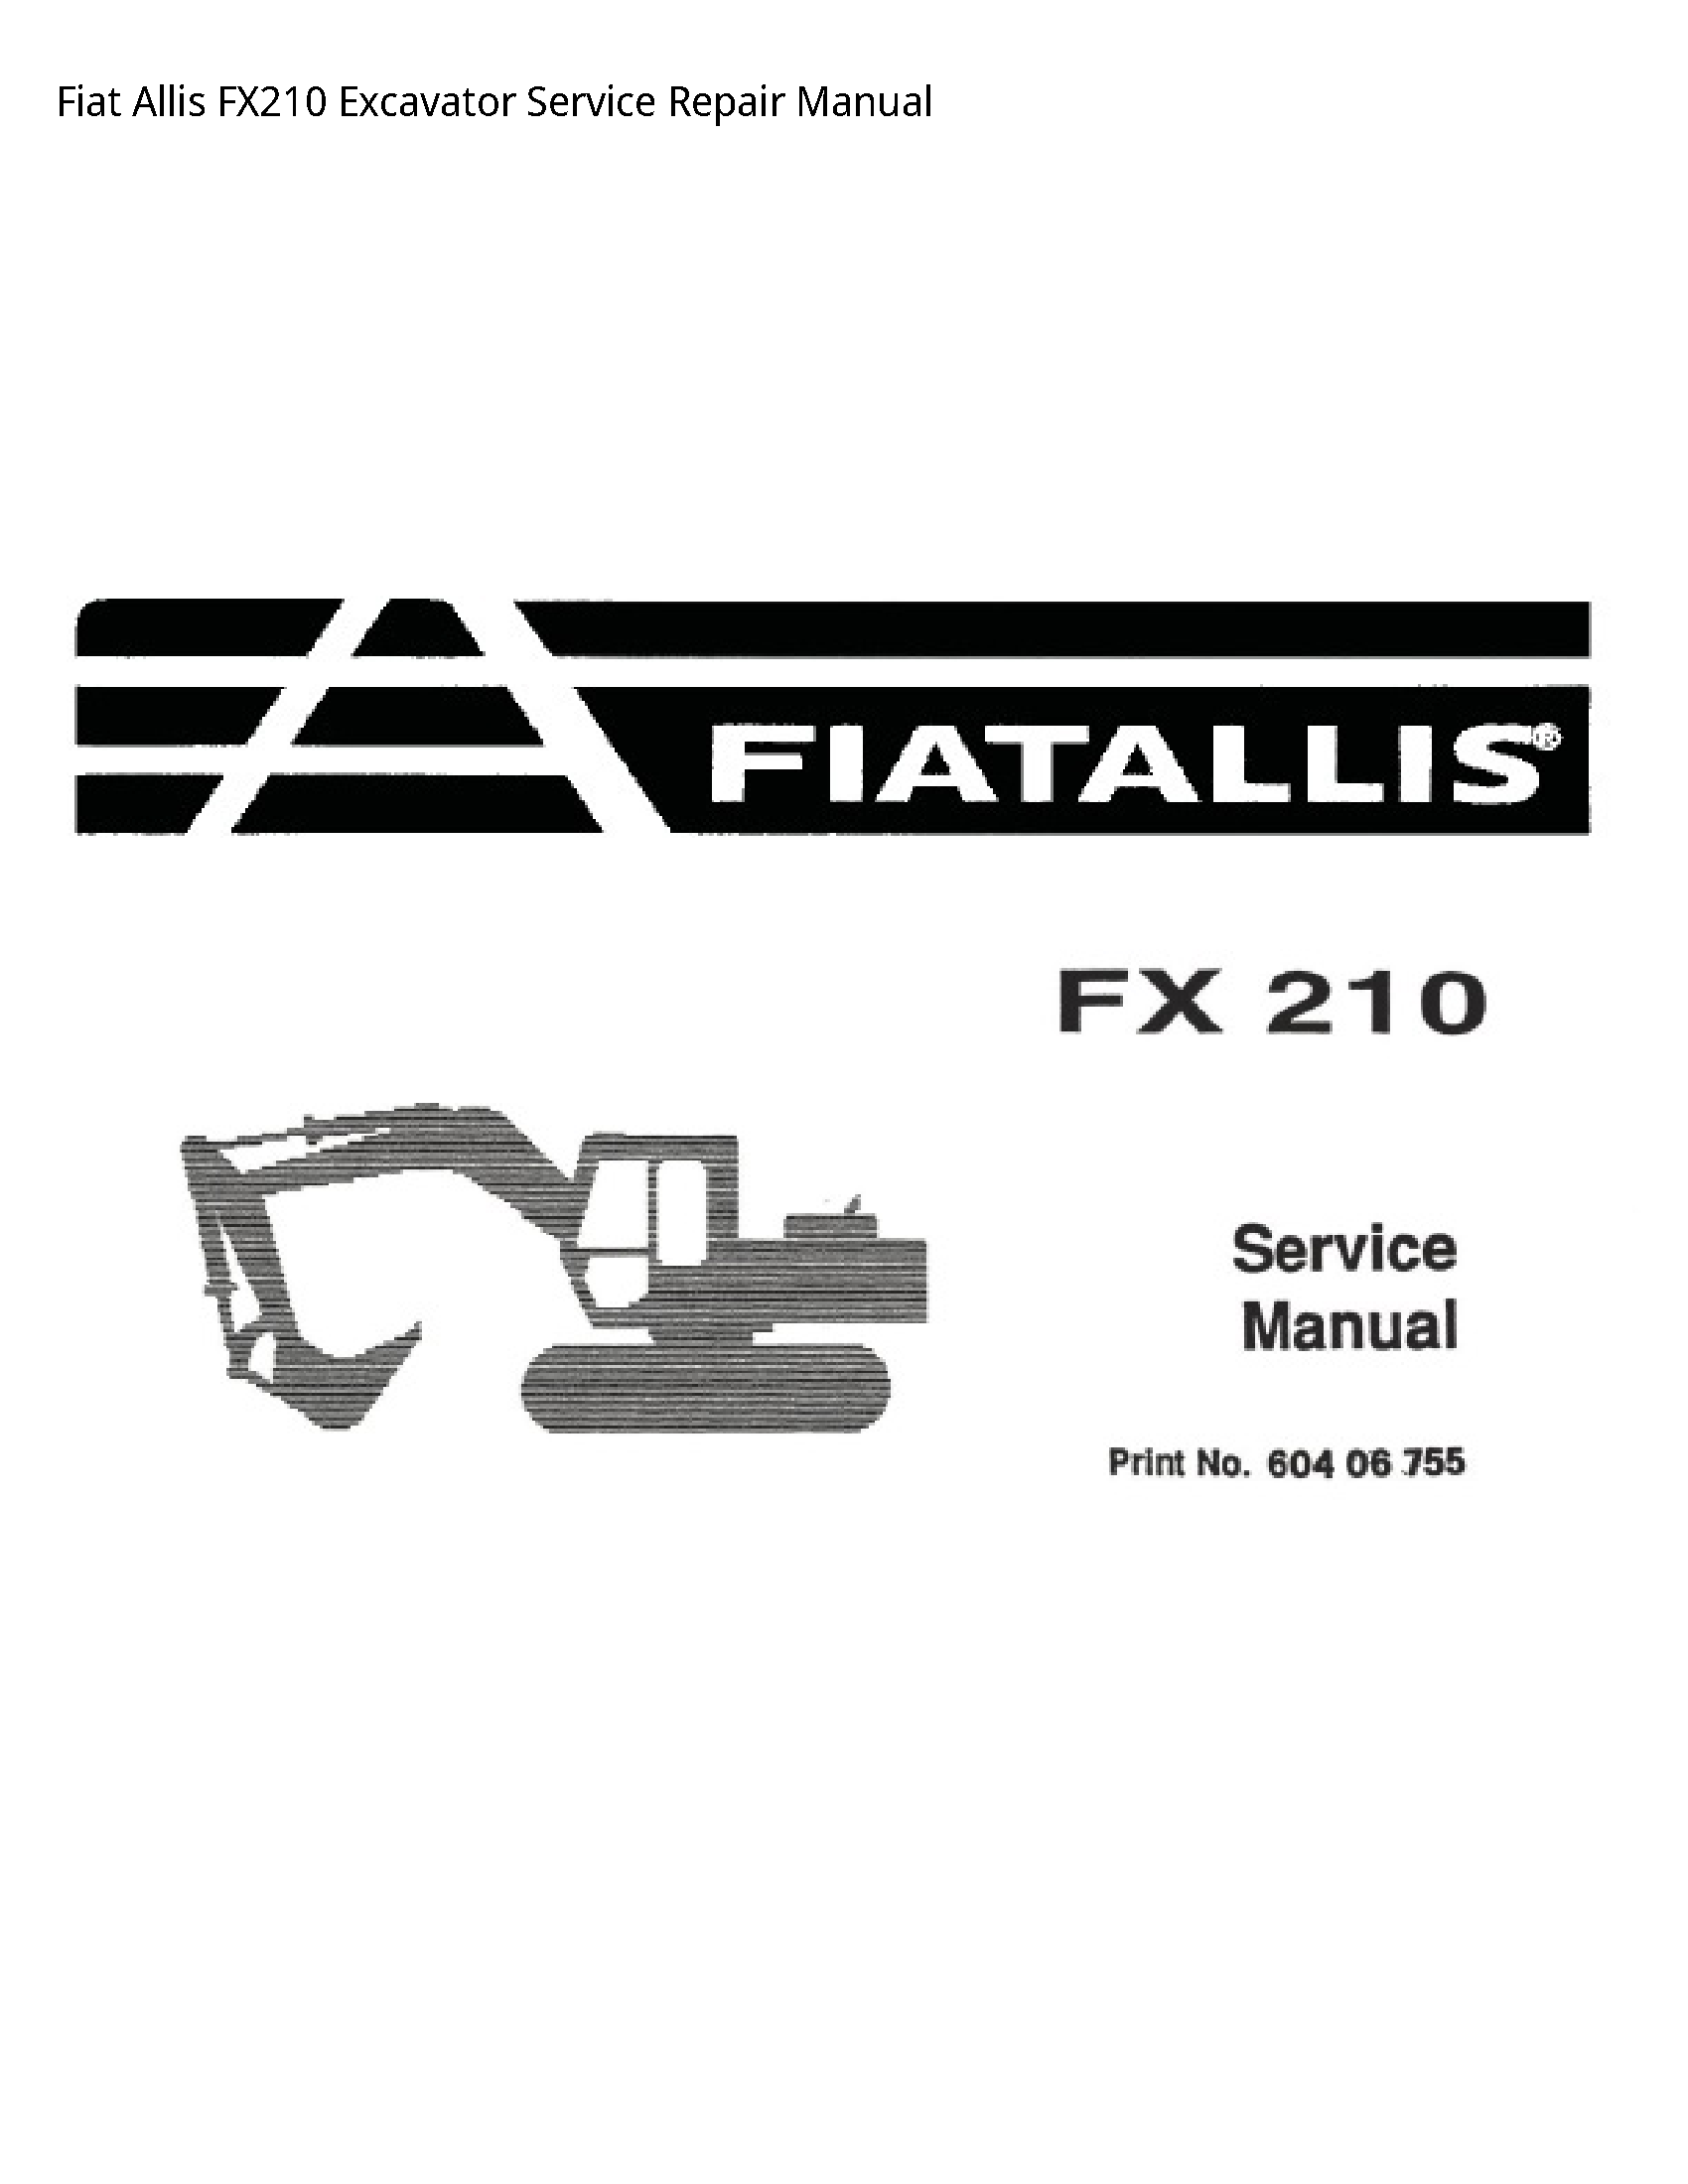 Fiat Allis FX210 Excavator manual